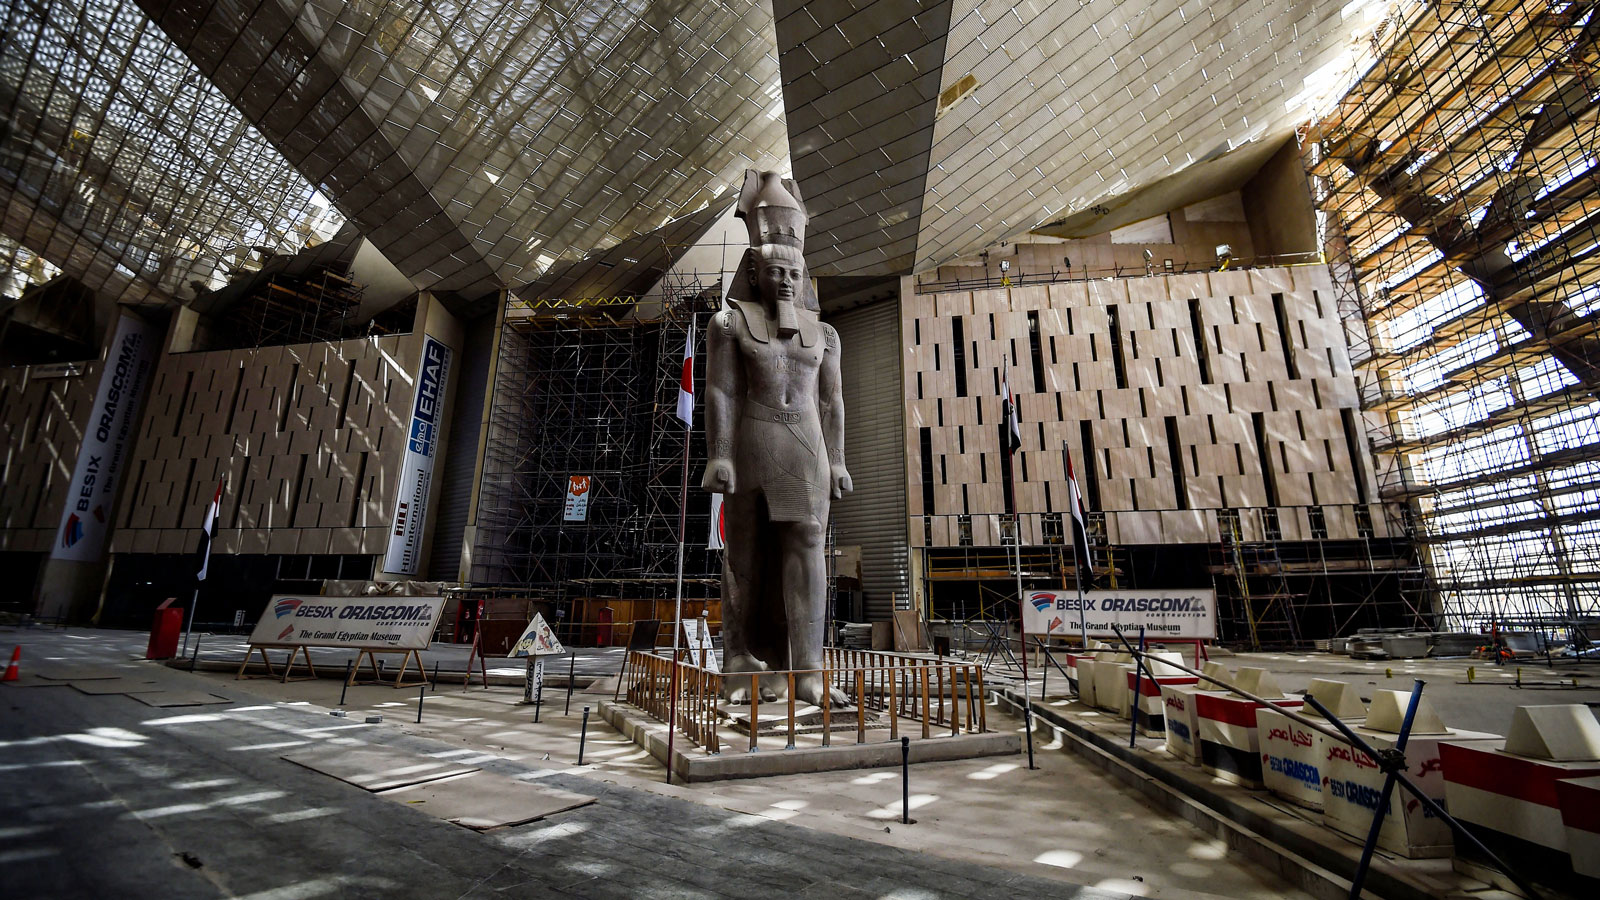 Grand Egyptian Museum in Cairo: 'Secret' tour takes travelers inside | CNN Travel